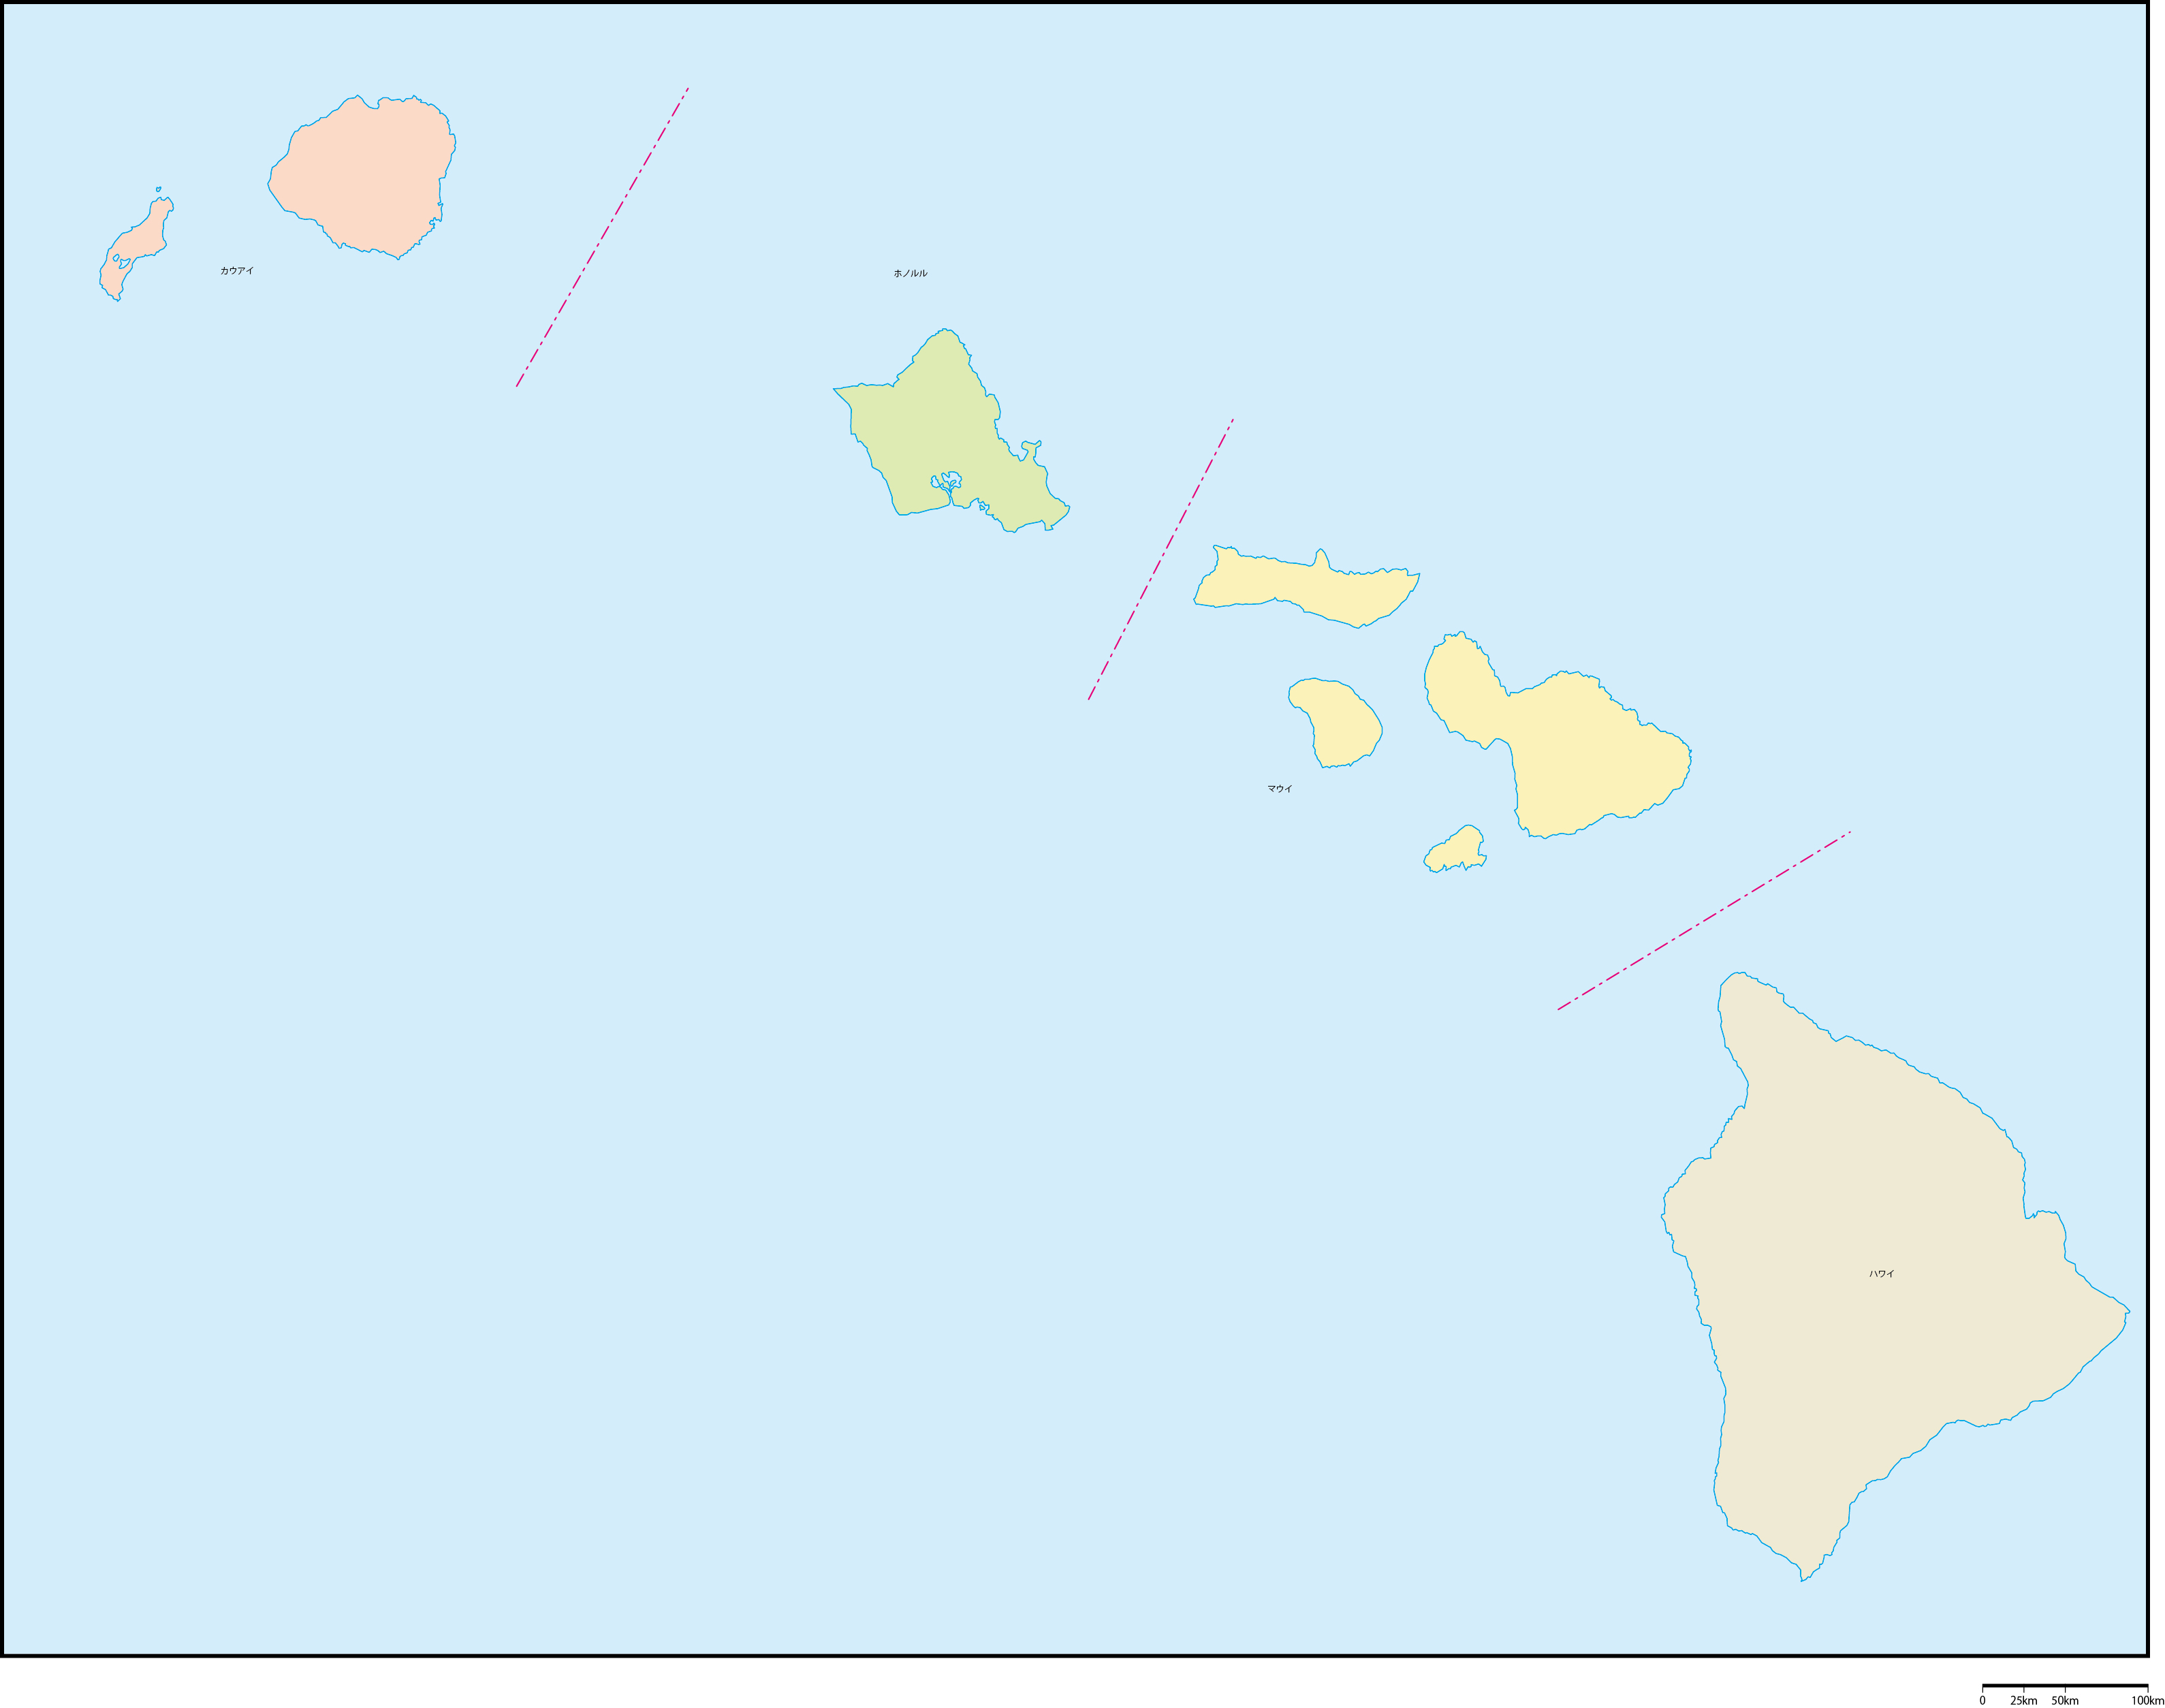 ハワイ州郡色分け地図郡名あり(日本語)フリーデータの画像